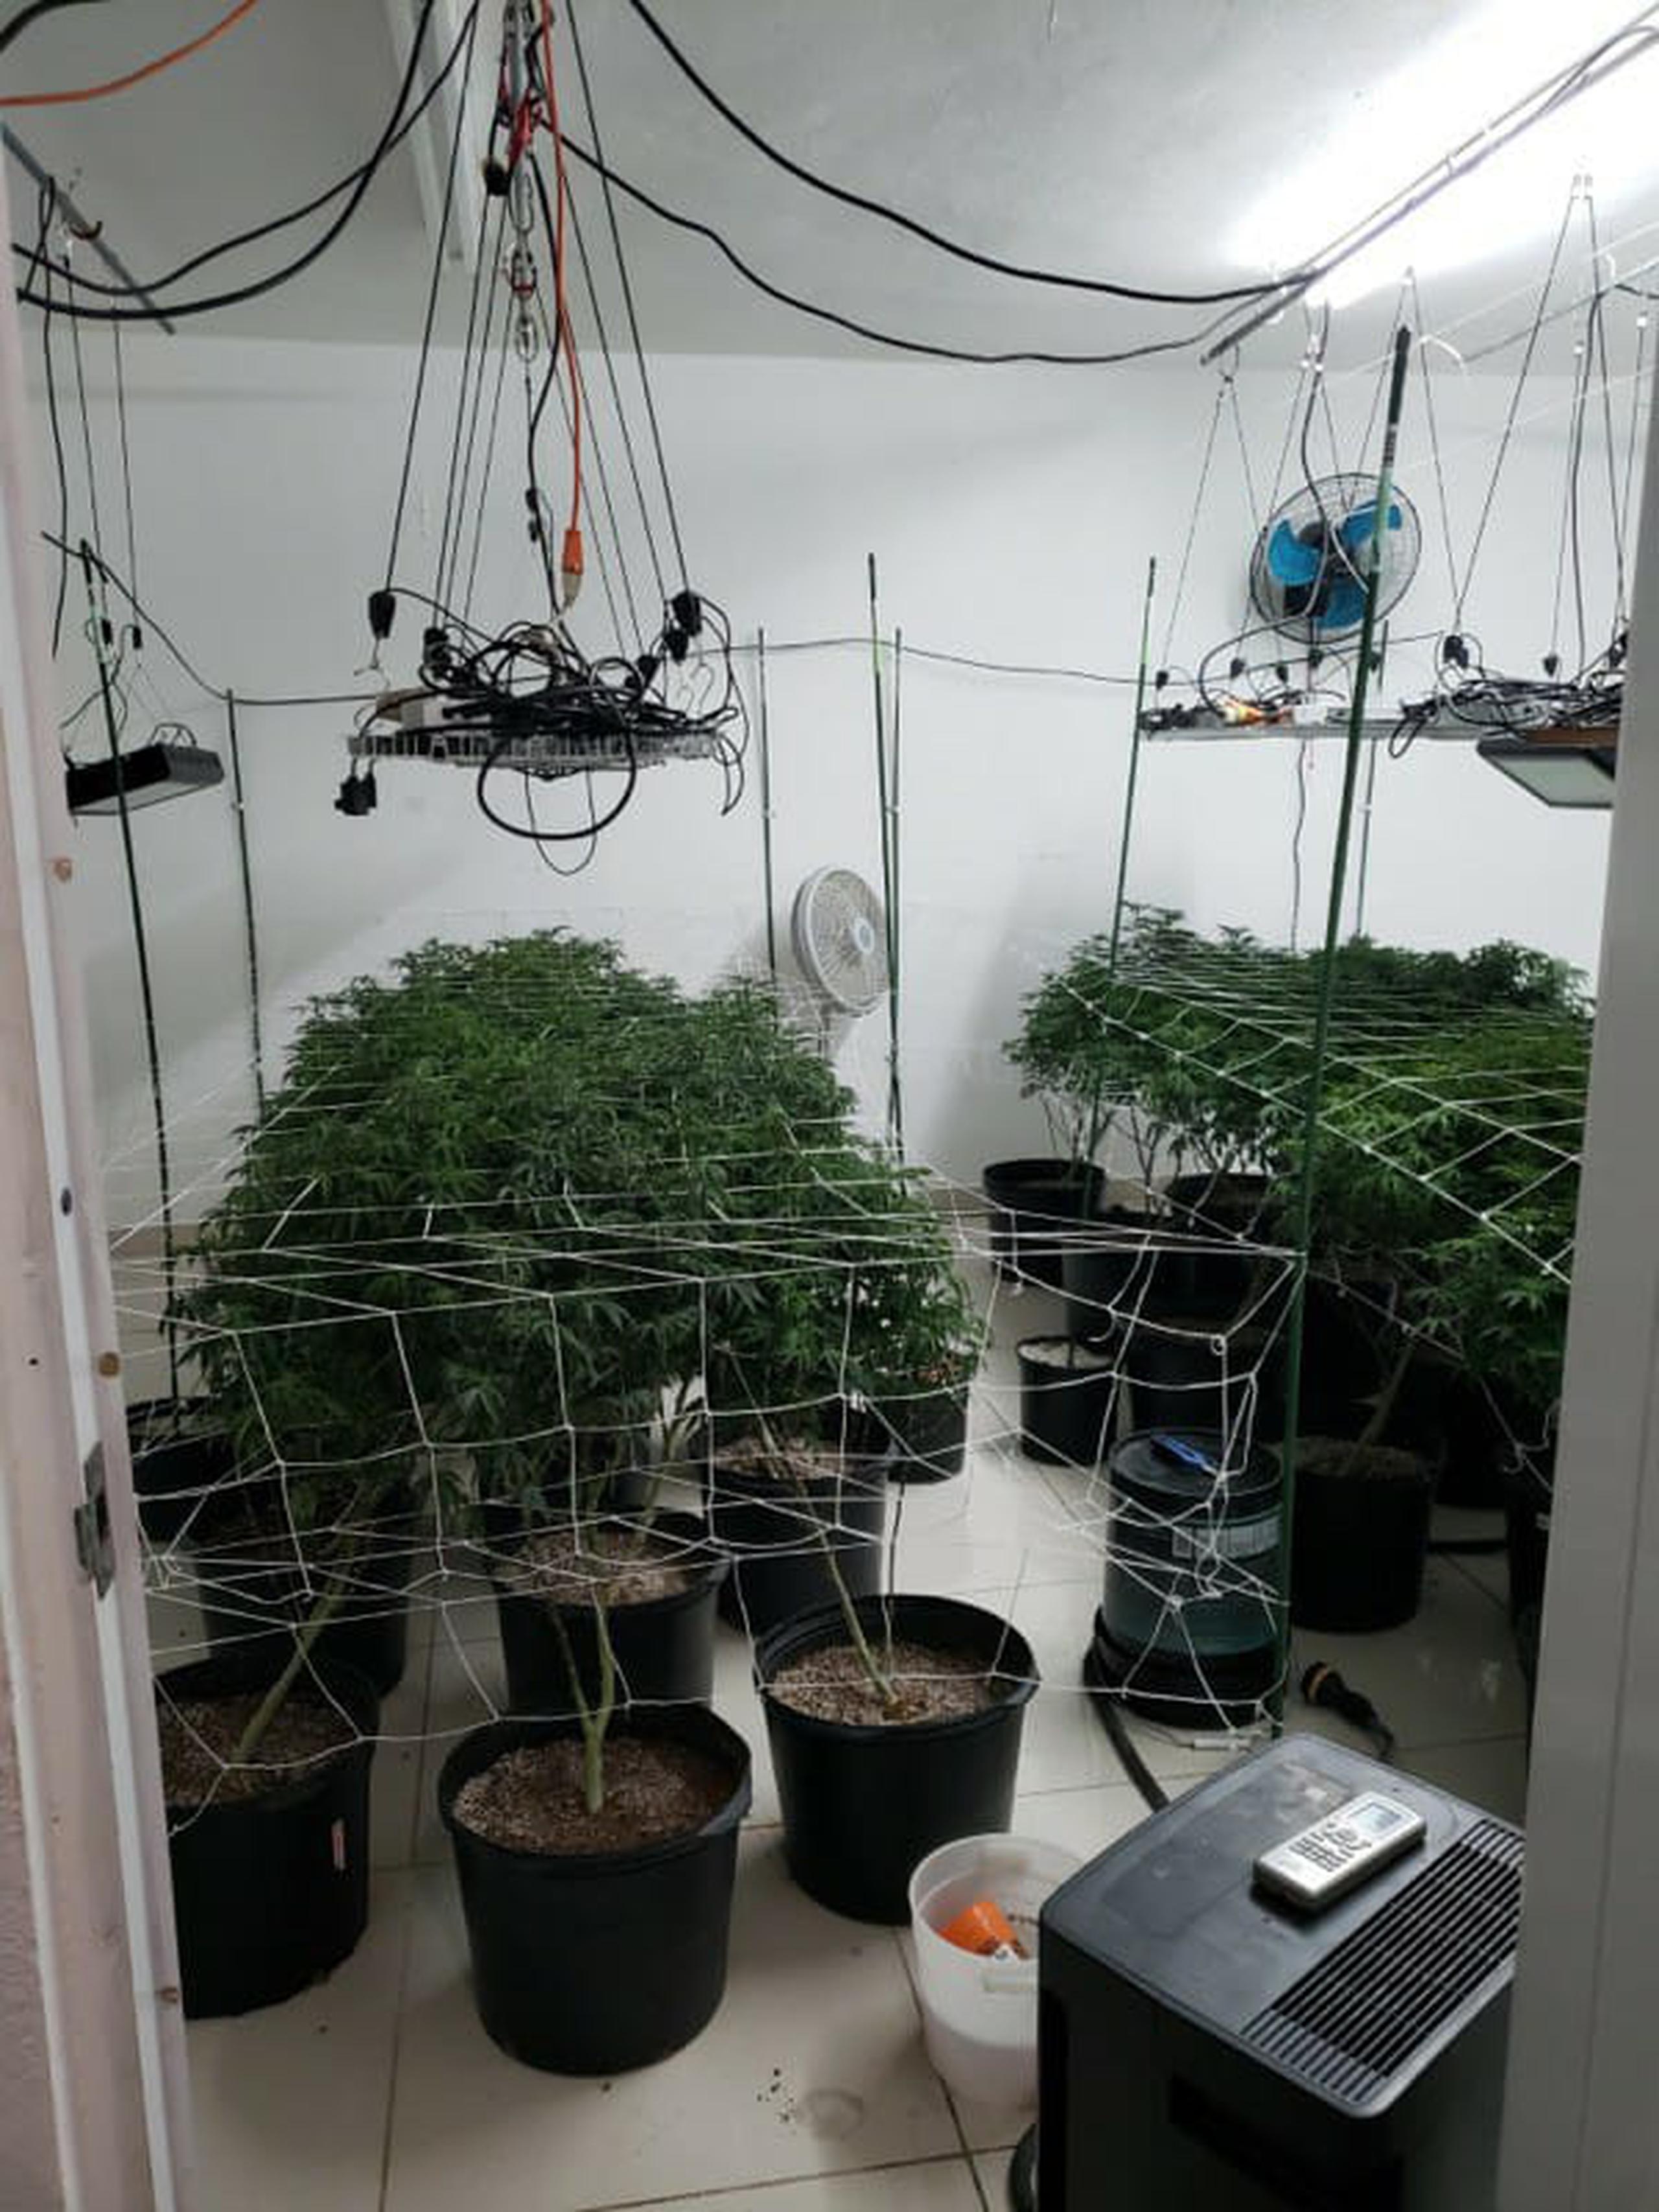 En una residencia de la urbanización Santa Juanita en Bayamón se incautó un invernadero con 69 plantas de marihuana y 3 libras adicionales.